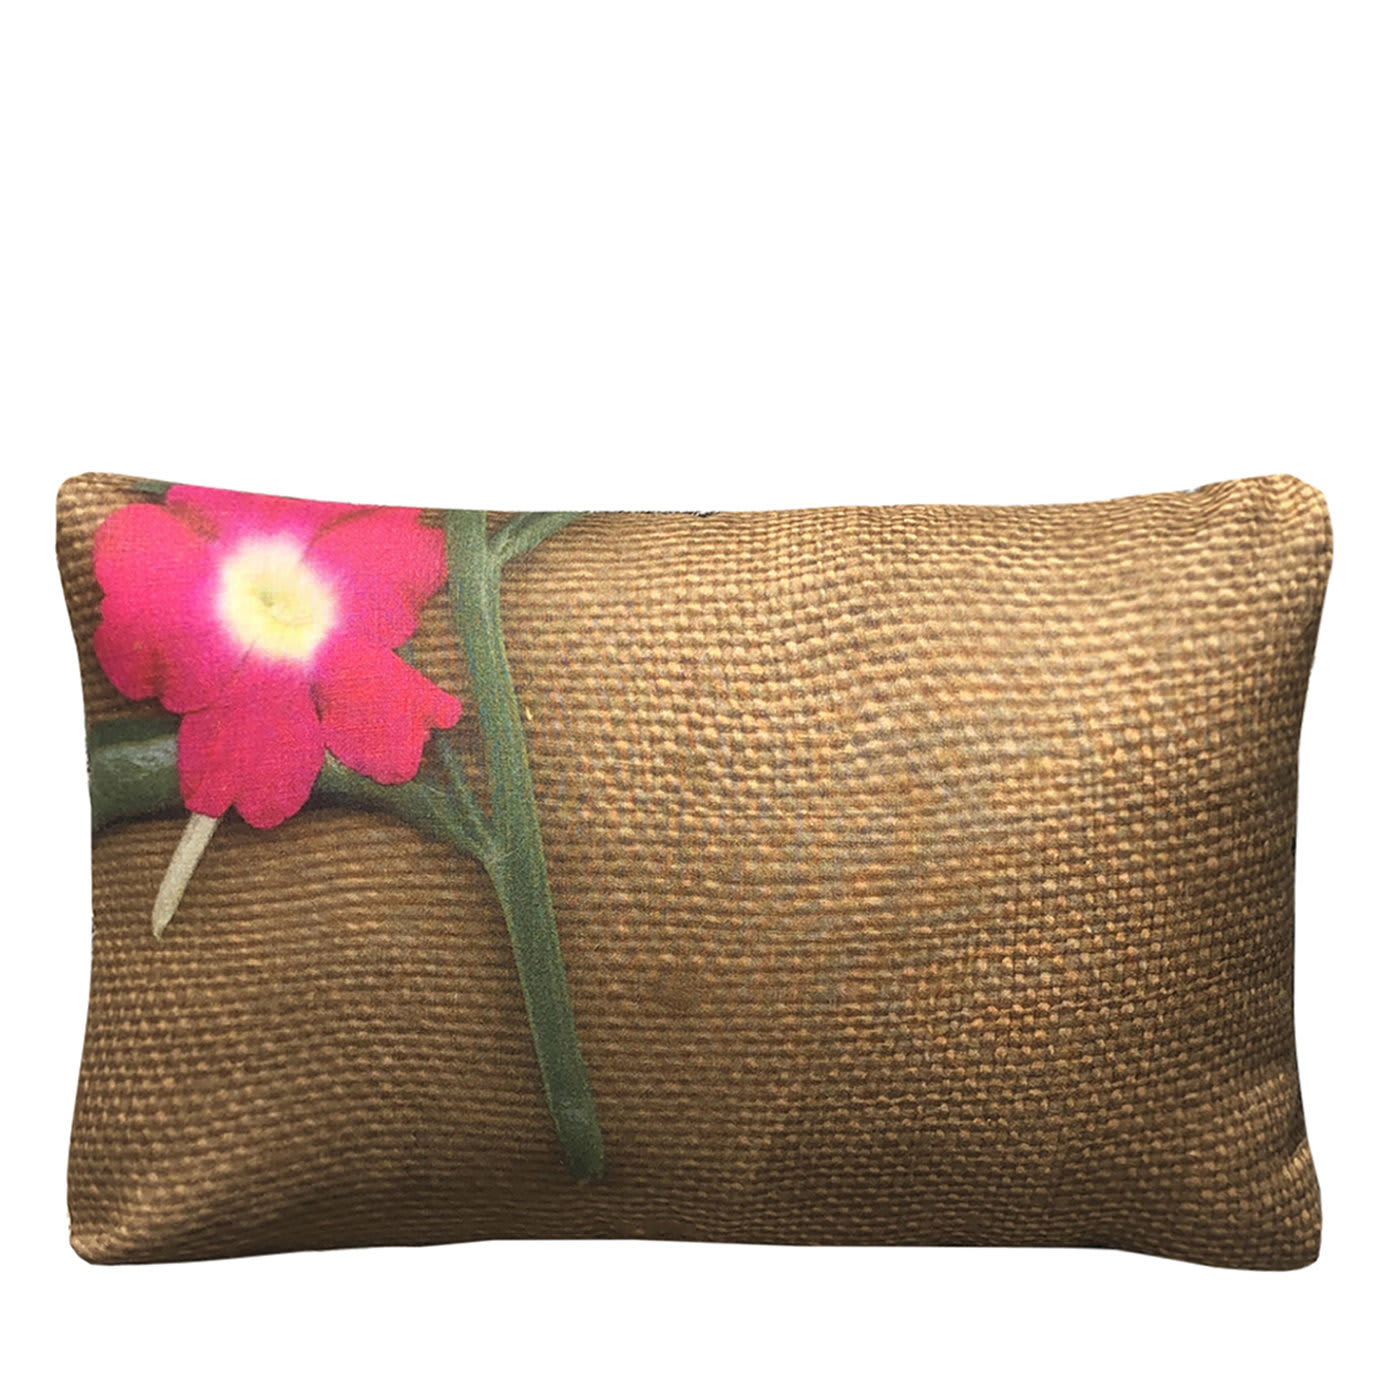 Fiori Brown Linen Cushion - Colomba Leddi